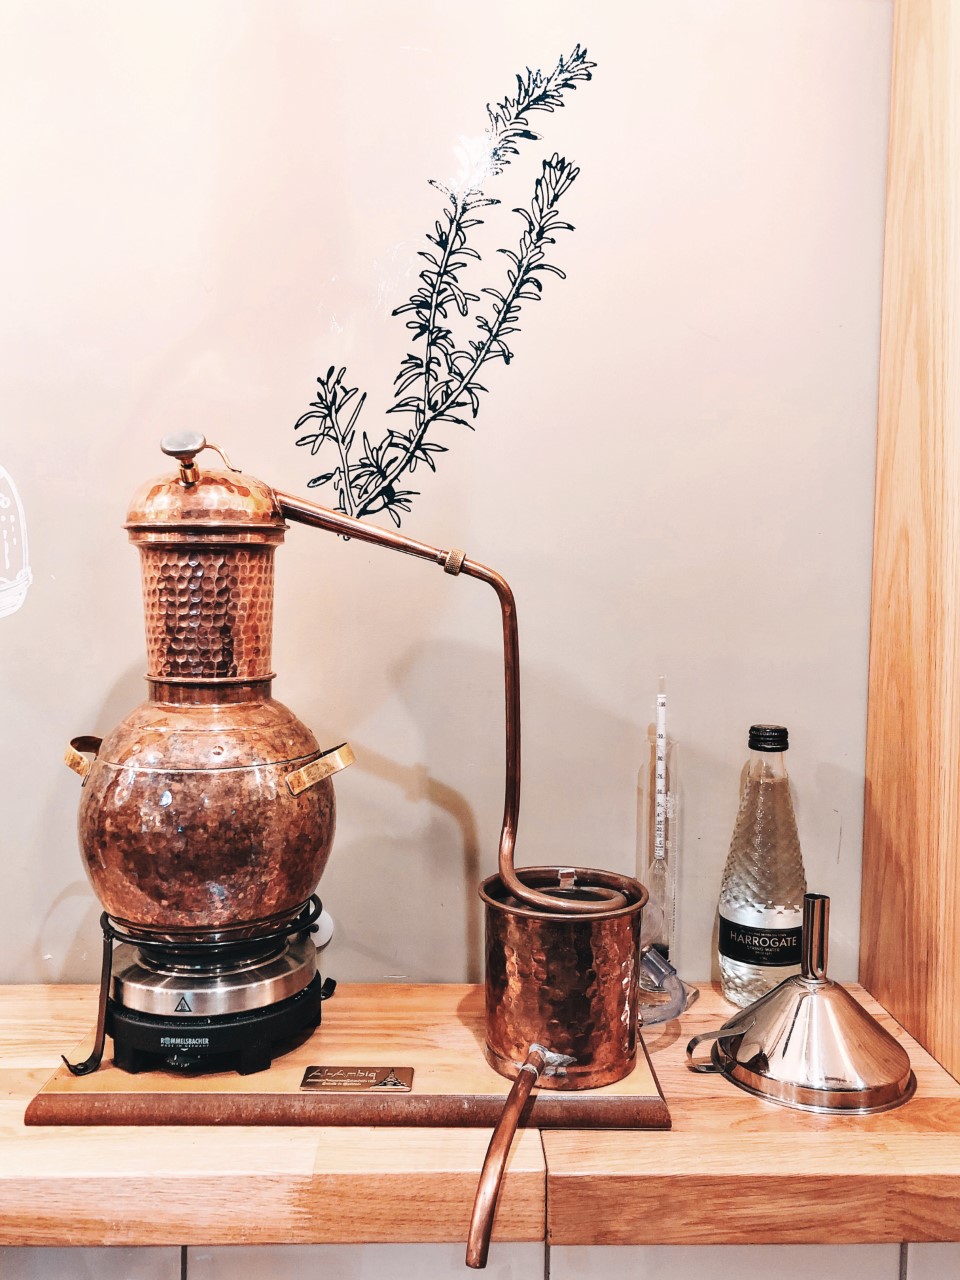 Master Distiller | Distill your own Gin at Spirit of Harrogate